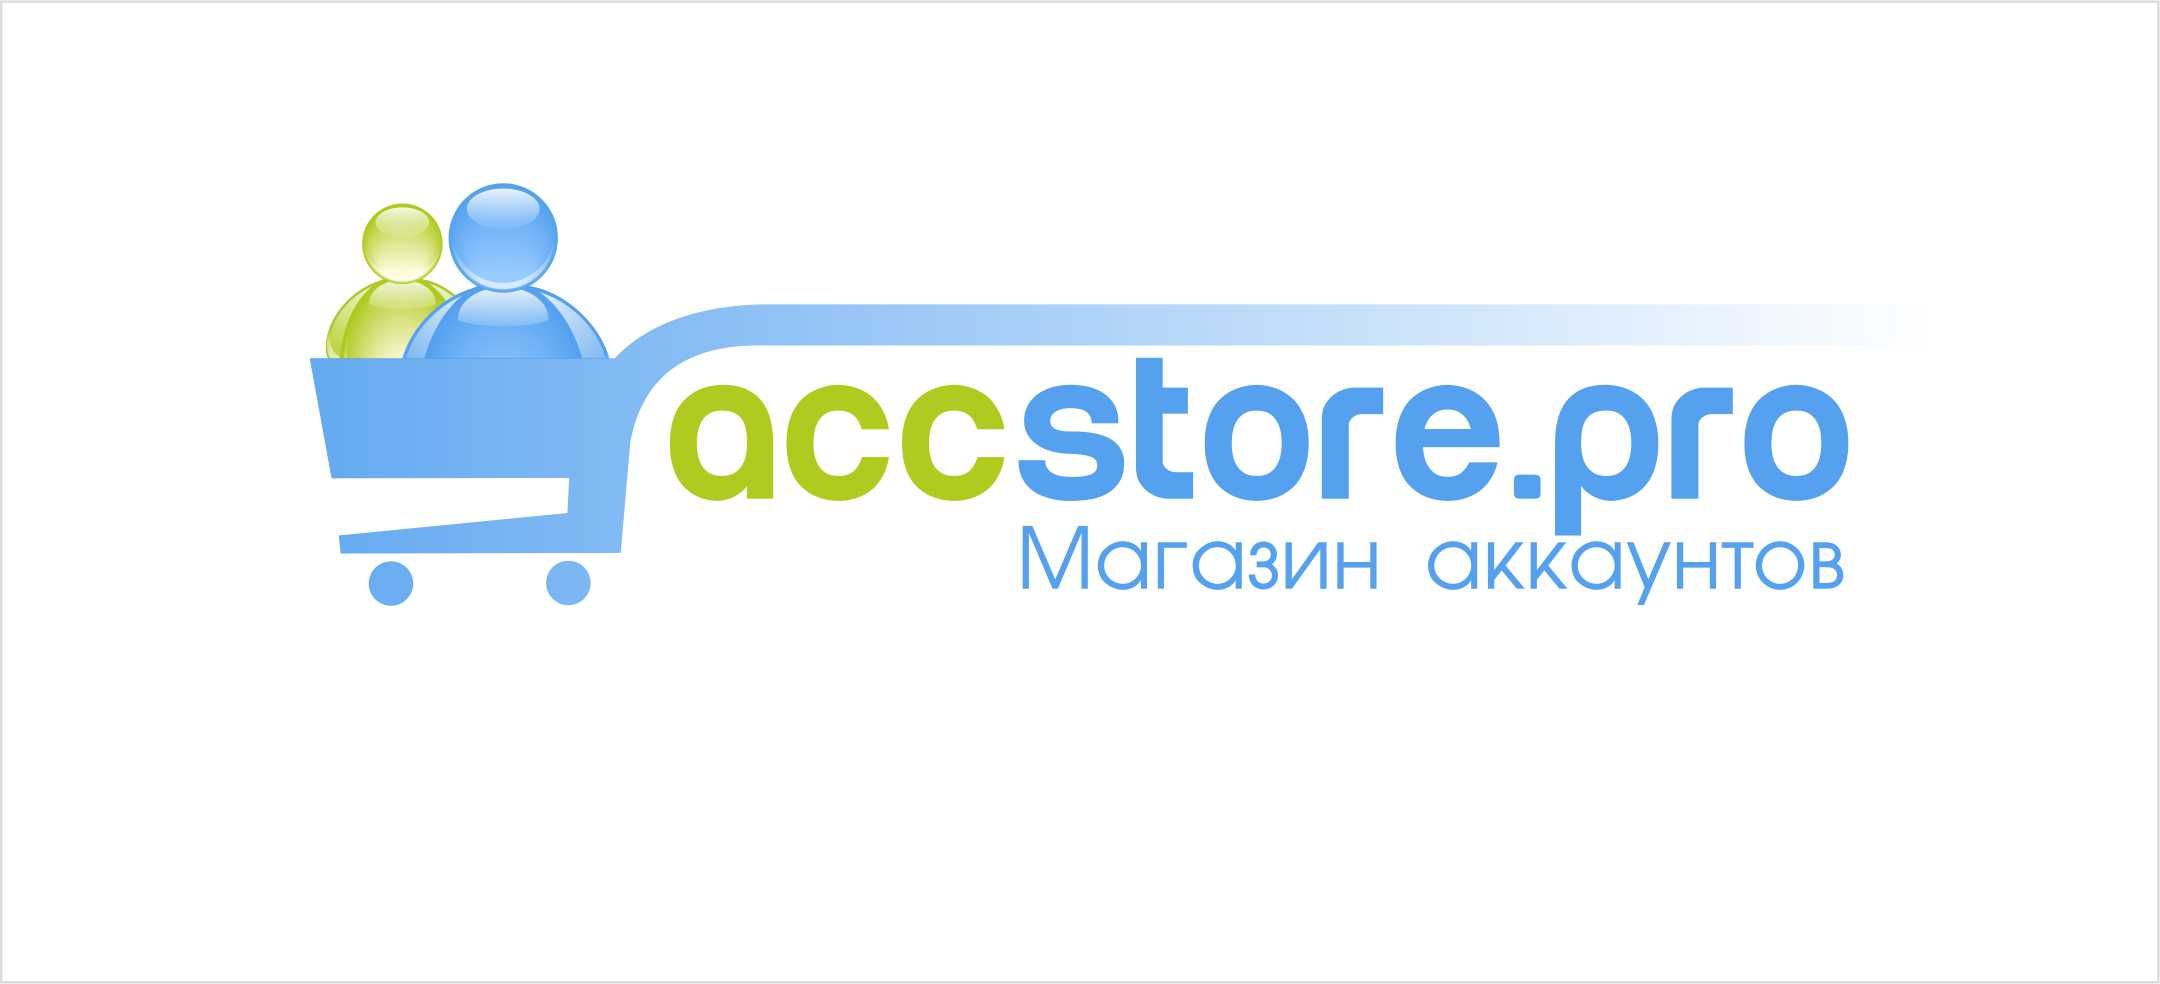 Логотип для магазина аккаунтов - дизайнер Andrey